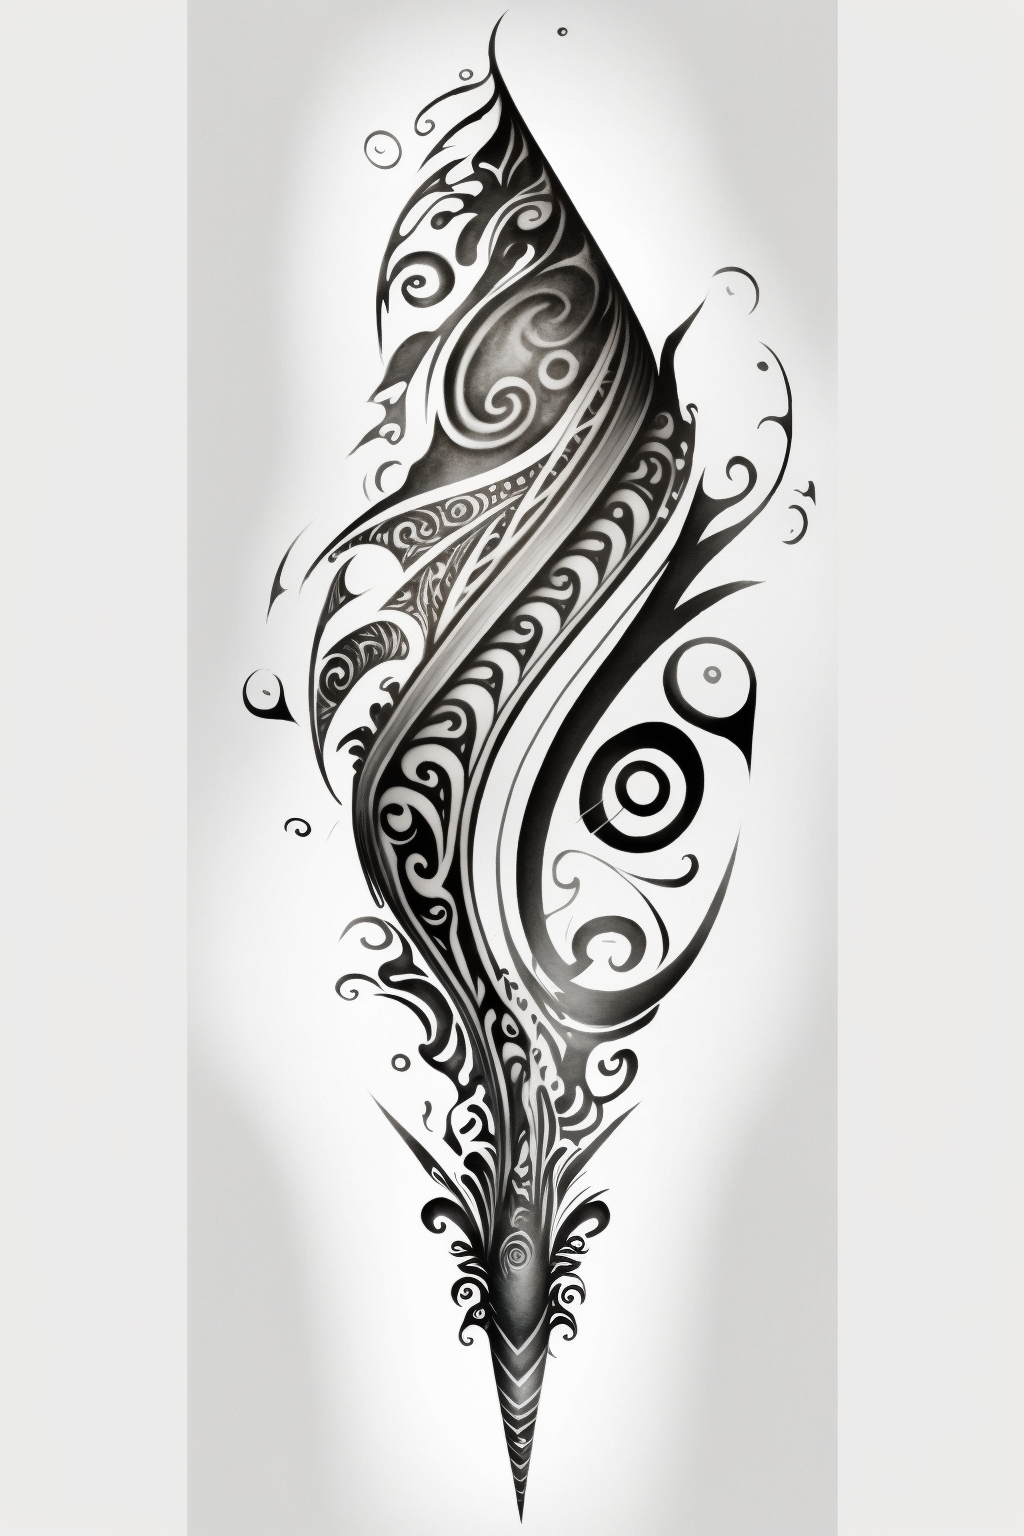 Maori Tattoo Designs | Ace Tattooz & Art Studio - Best Tattoo Studio